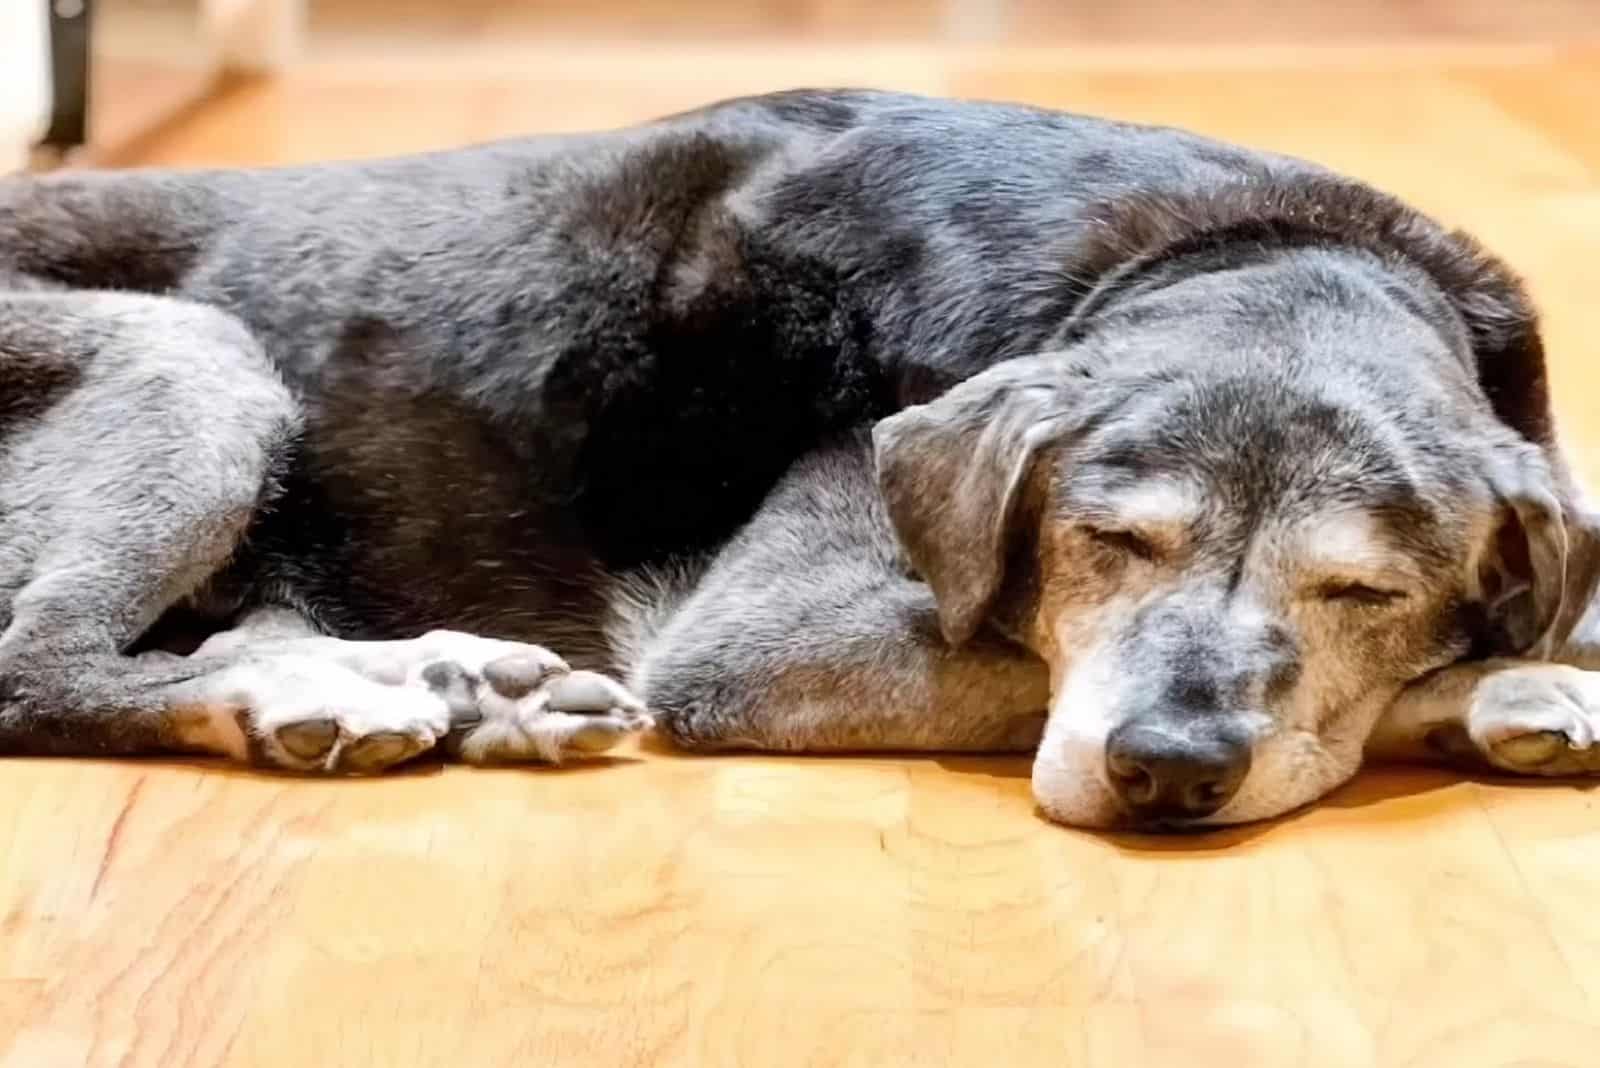 old dog sleeping on the floor